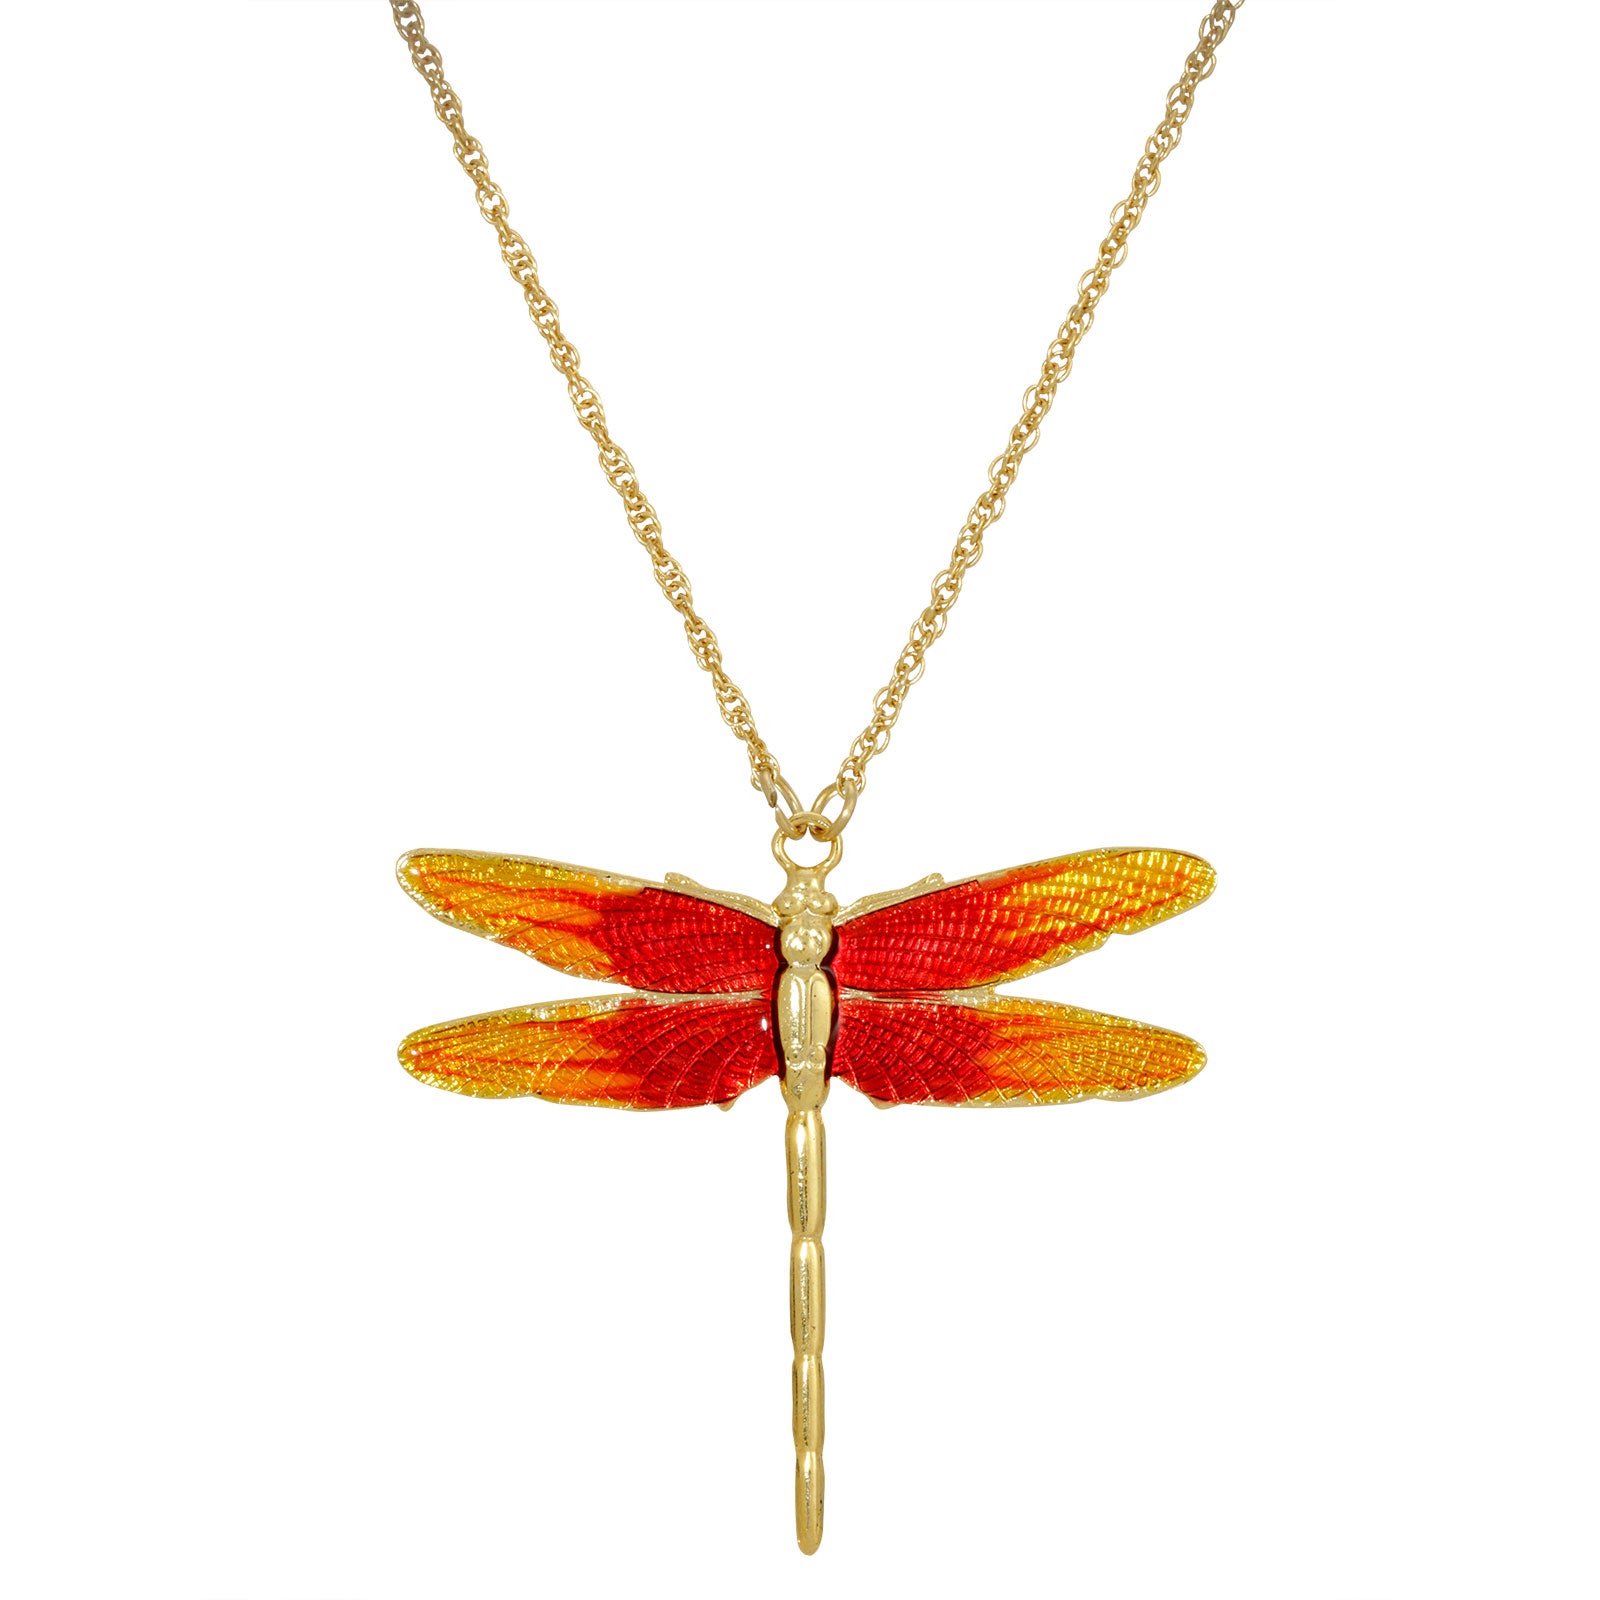 Gold-Tone Orange Enamel Dragonfly Pendant Necklace 16